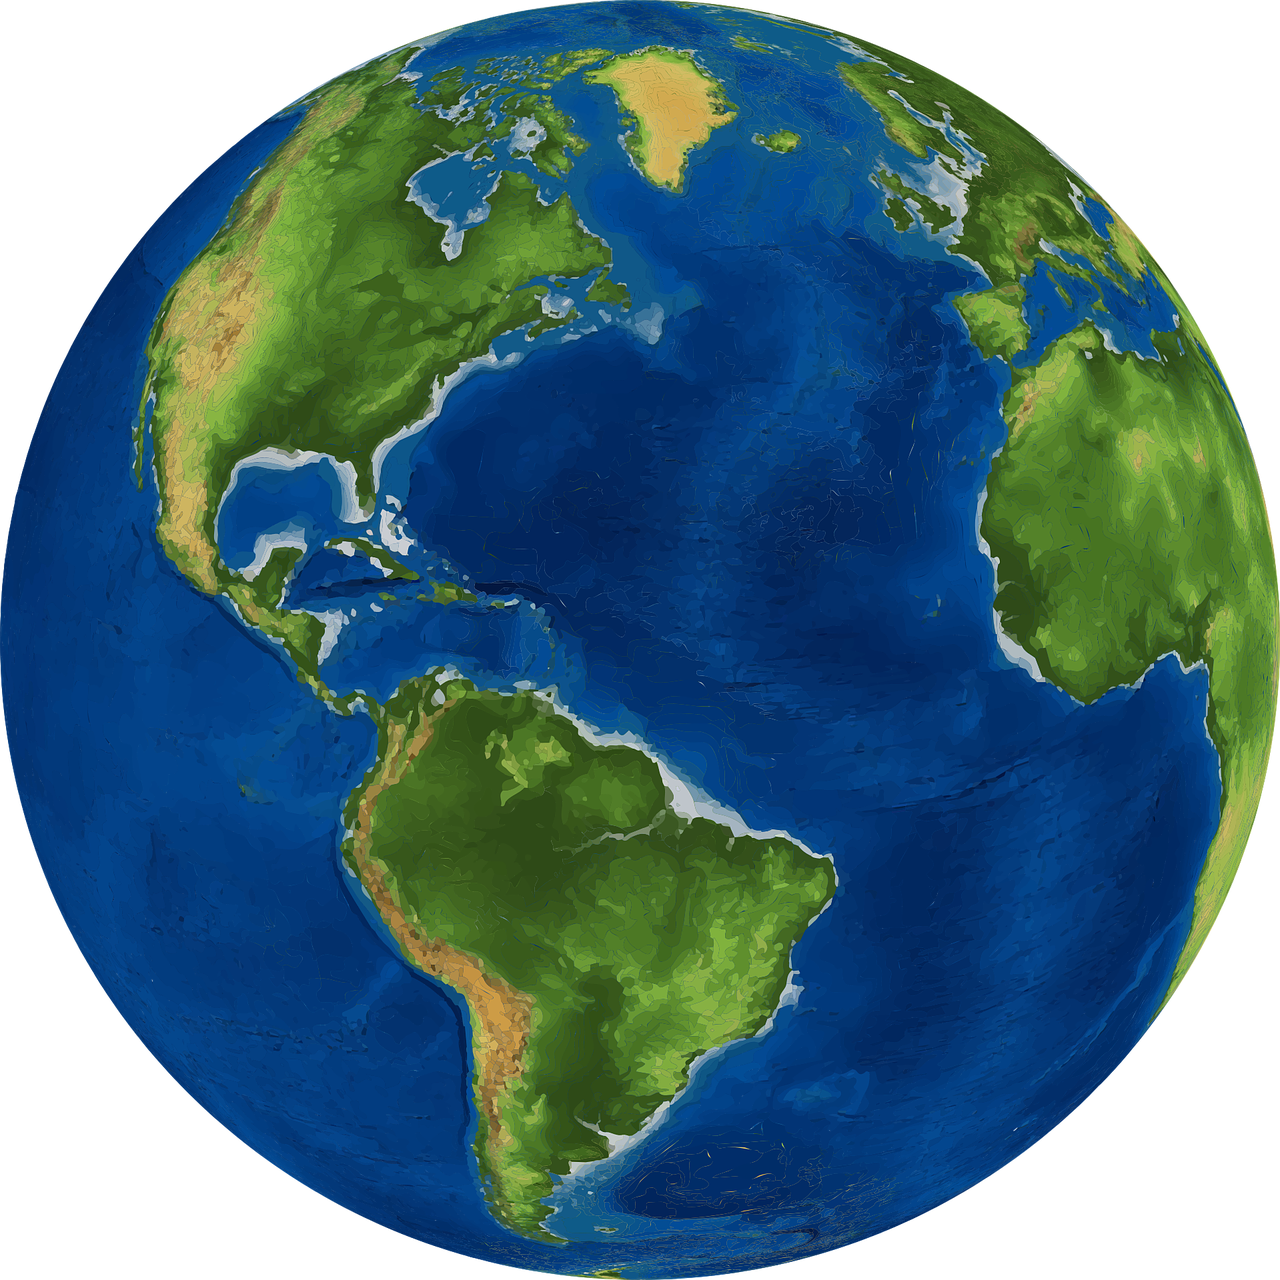 Pasaulis, Žemė, Planeta, Gaublys, Žemėlapis, Geografija, Kartografija, Žemynai, 3D, Sfera